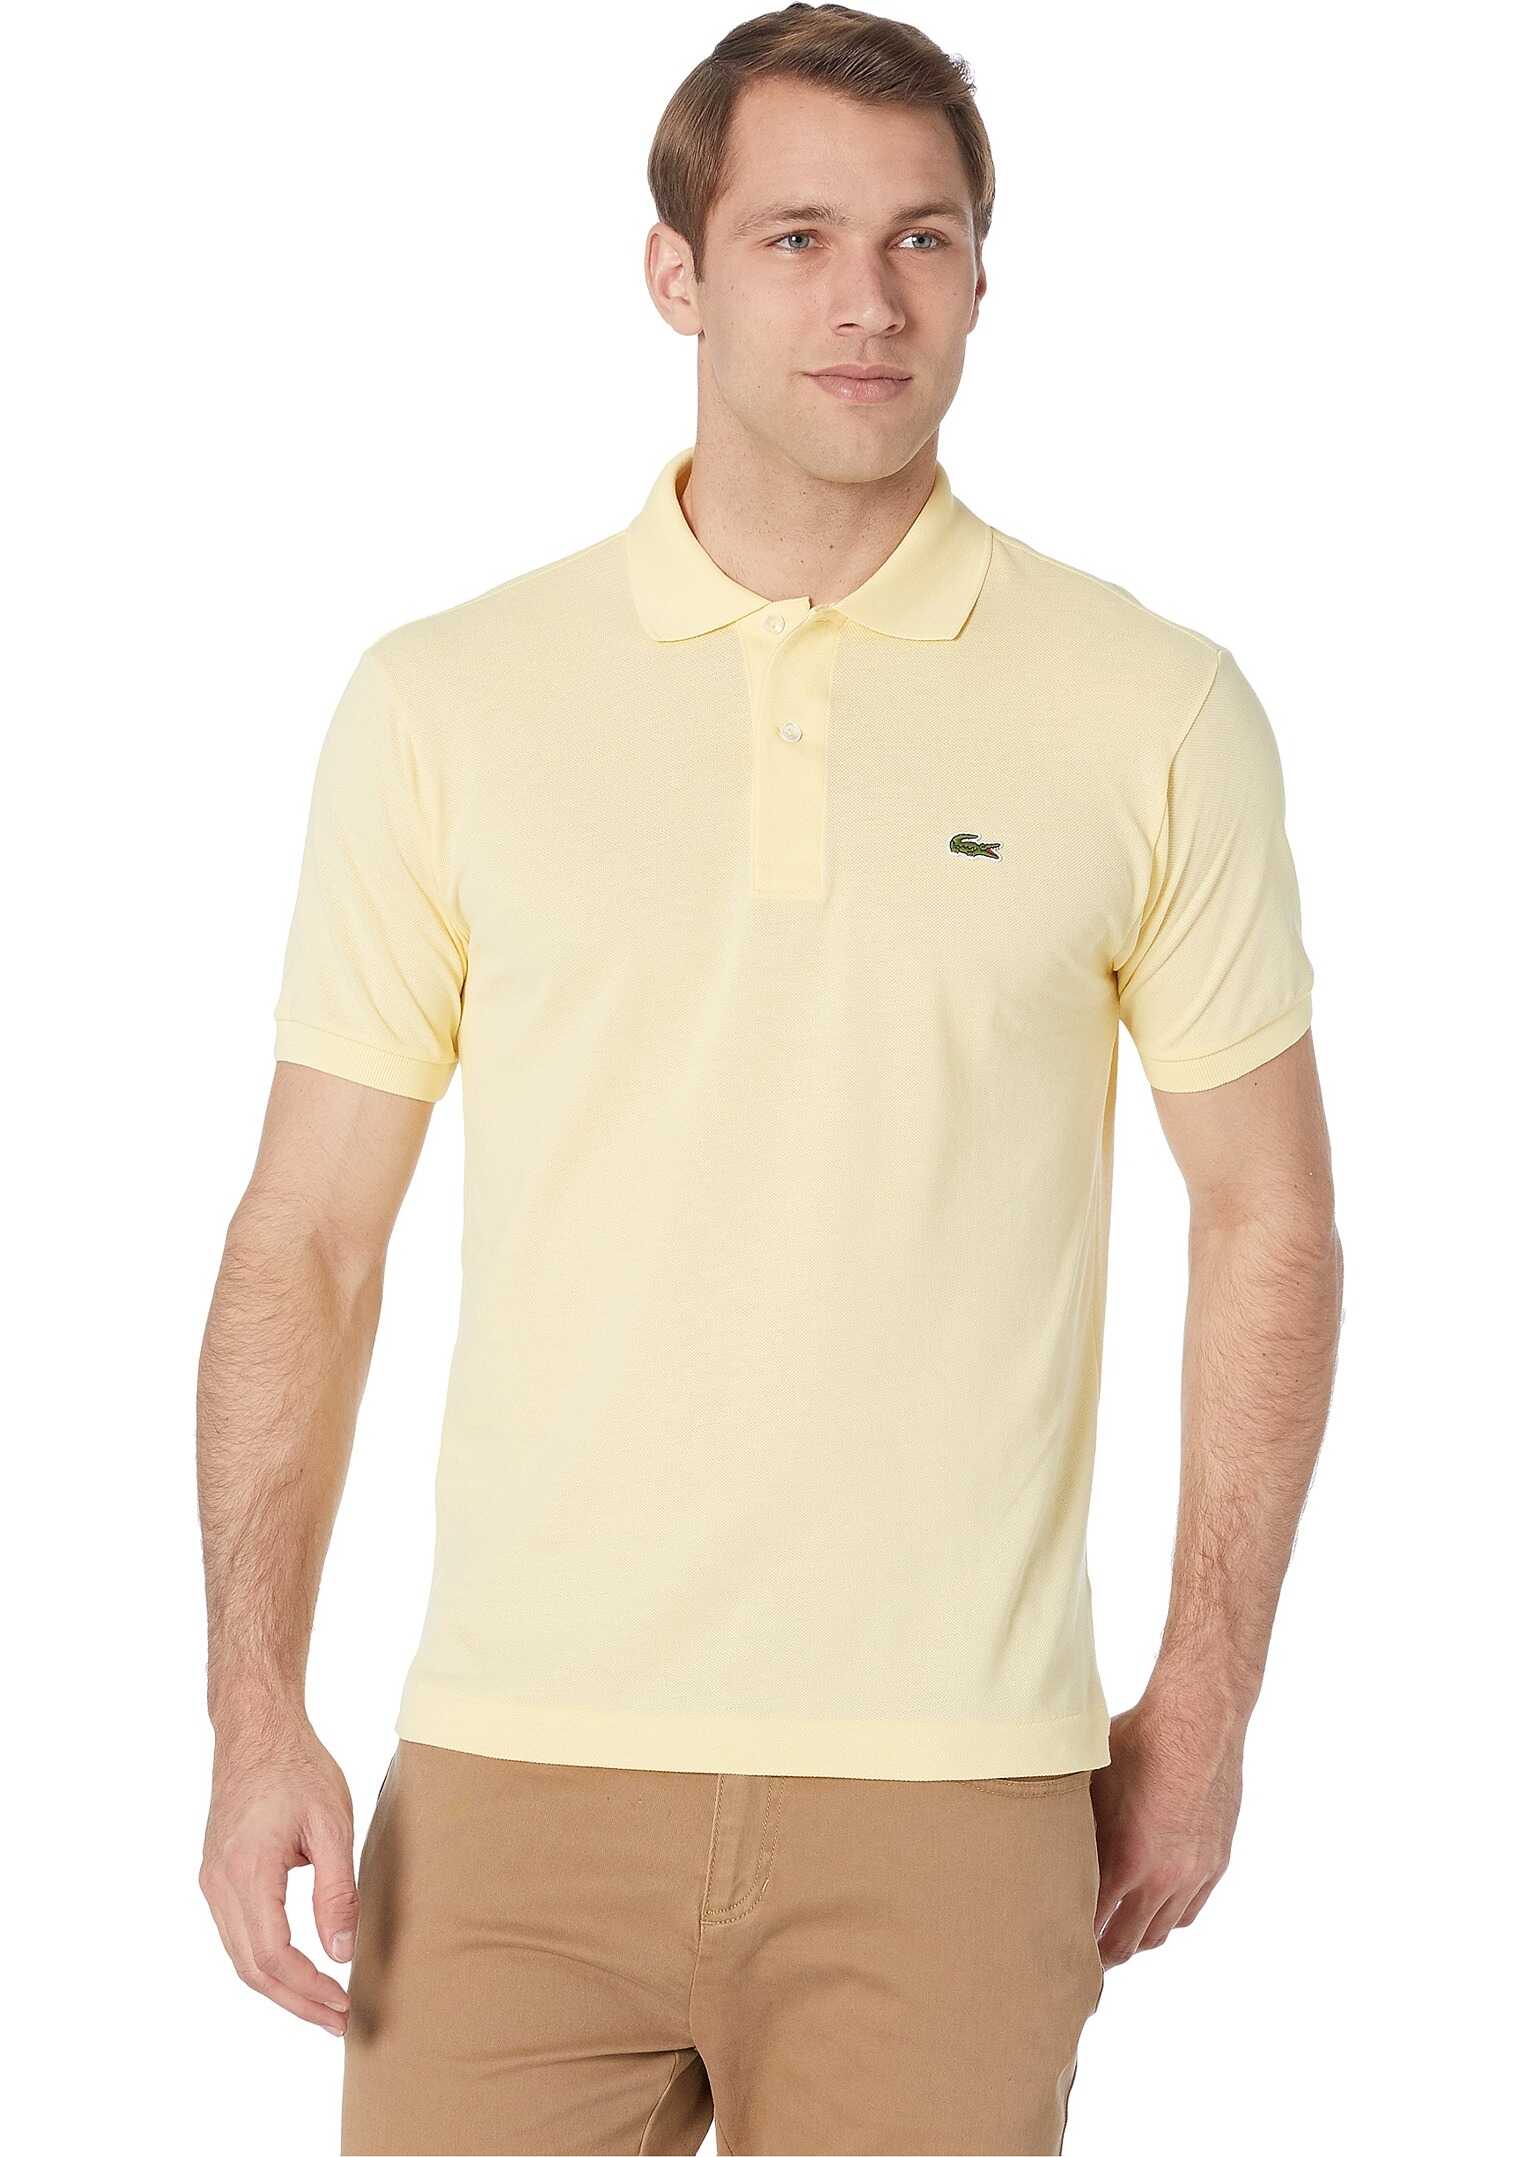 Lacoste Short Sleeve Classic Pique Polo Shirt Napolitan Yellow